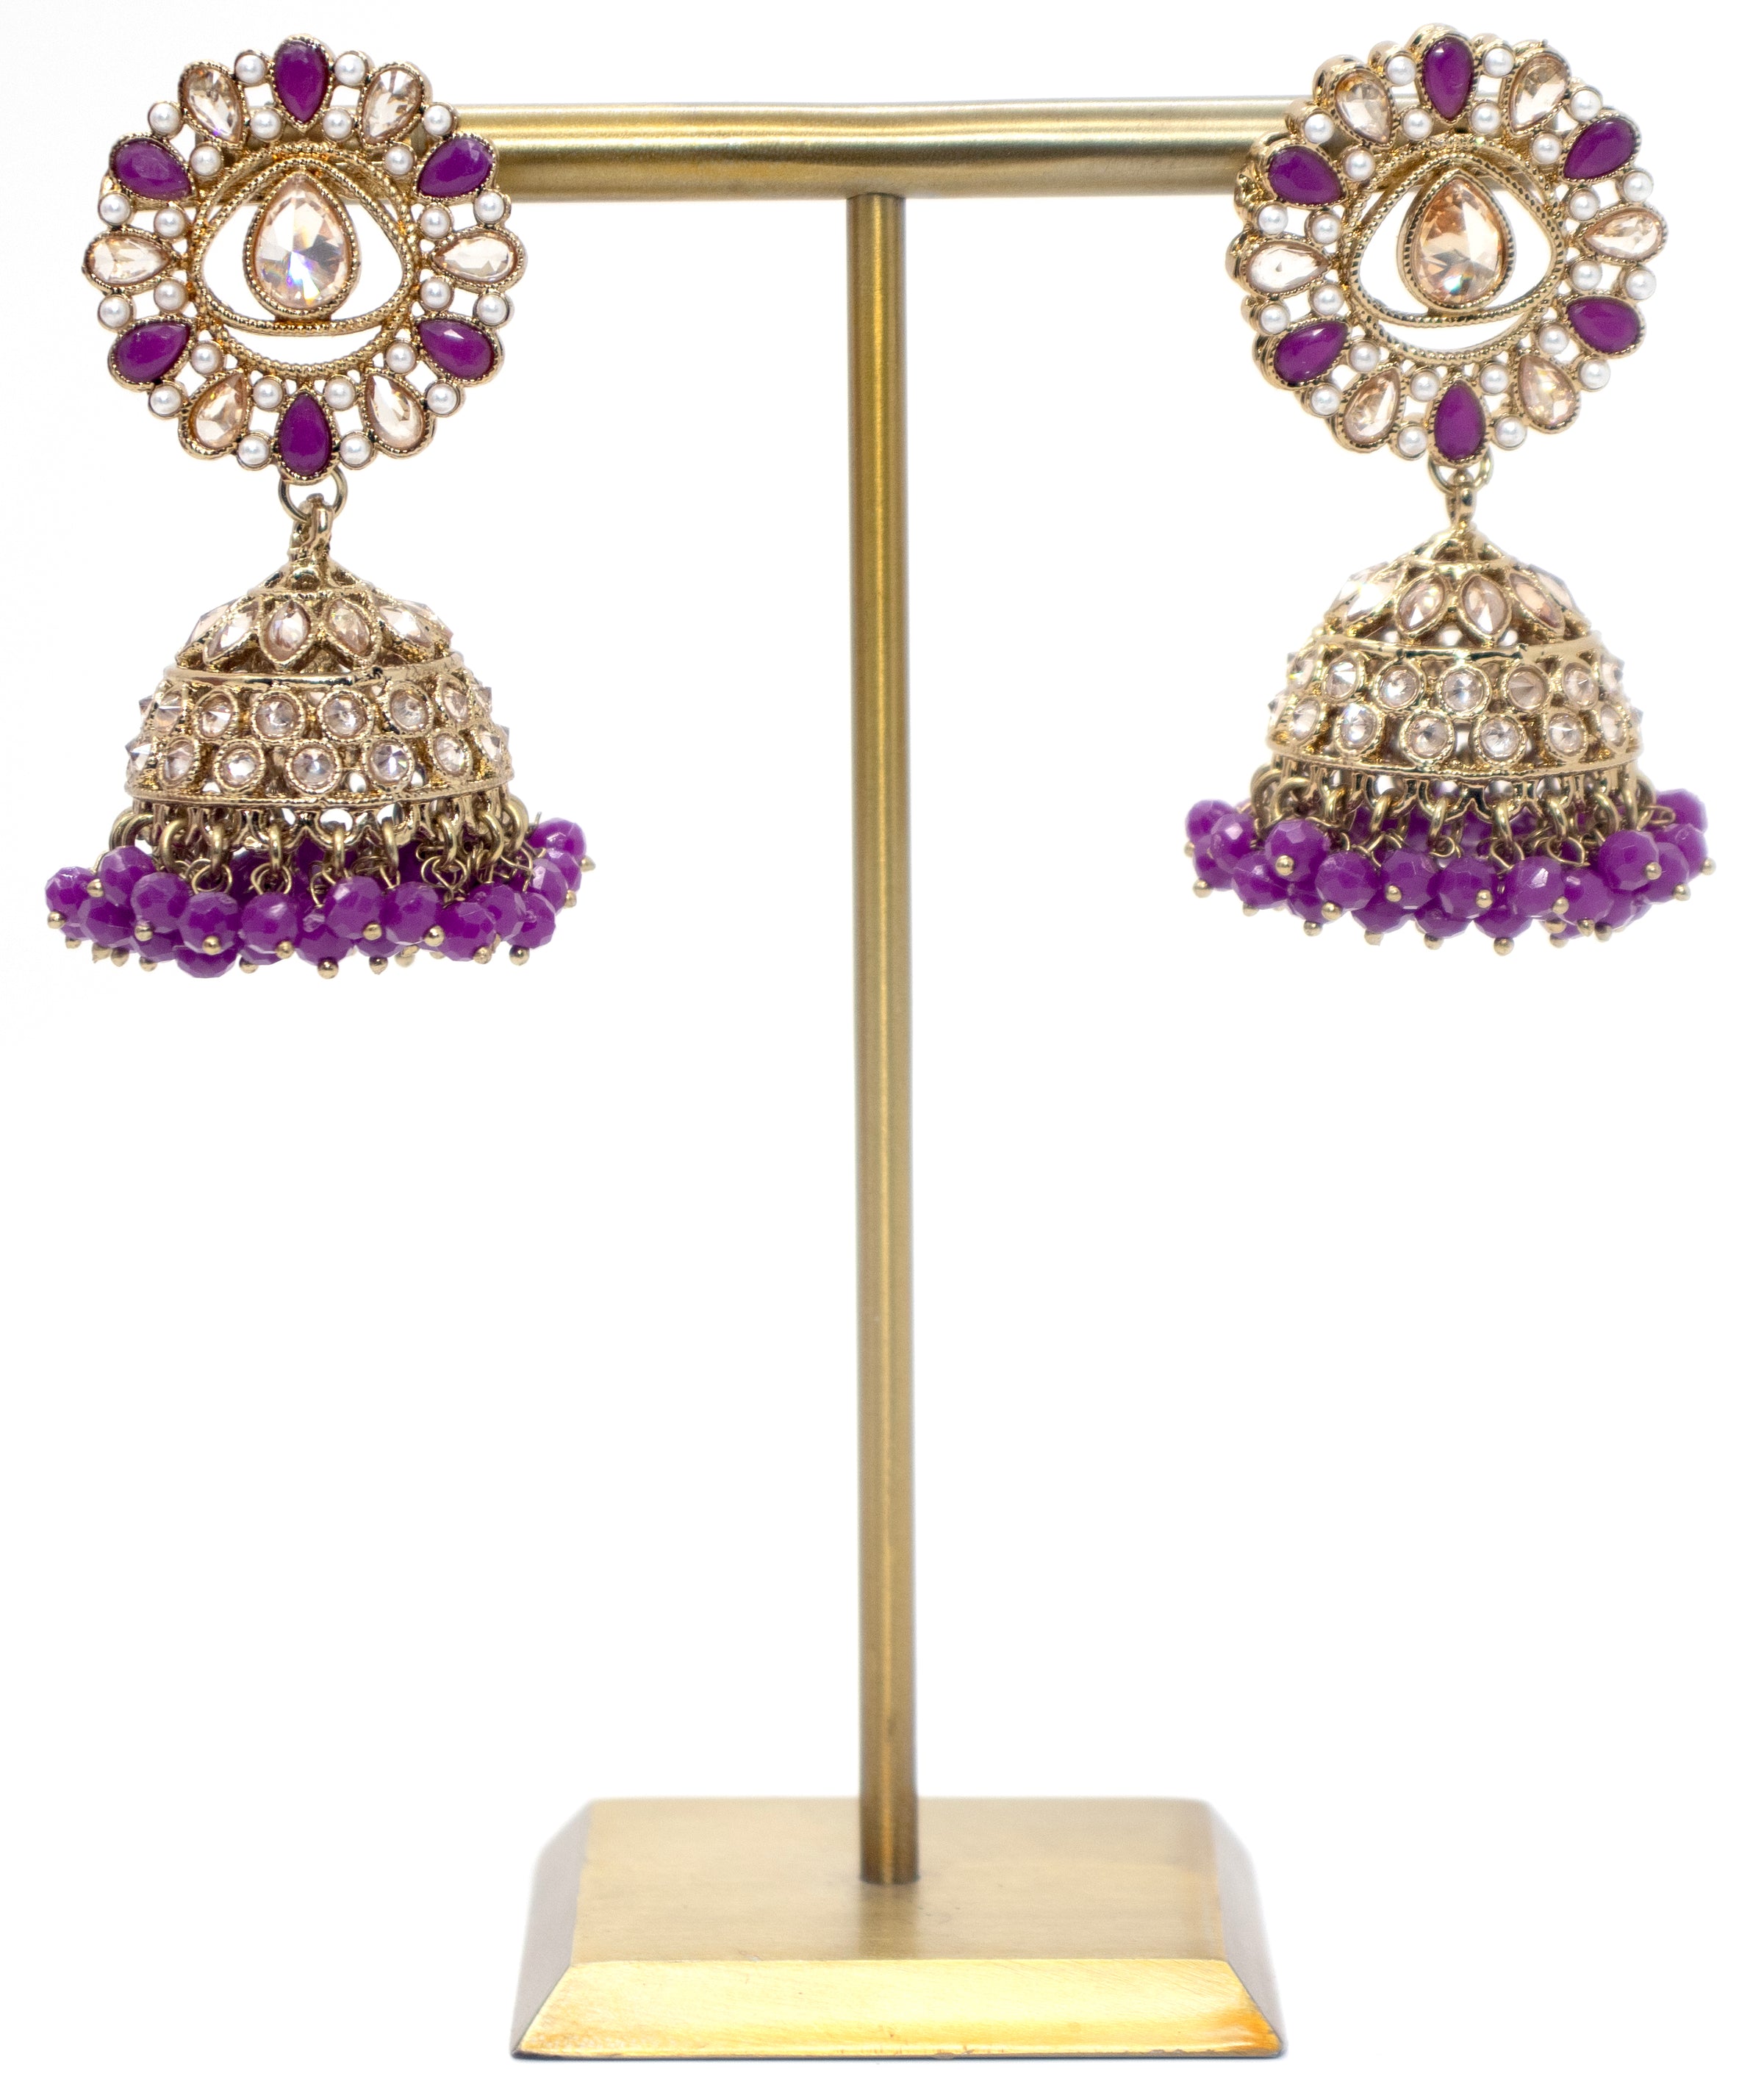 Gold & Purple Necklace Set